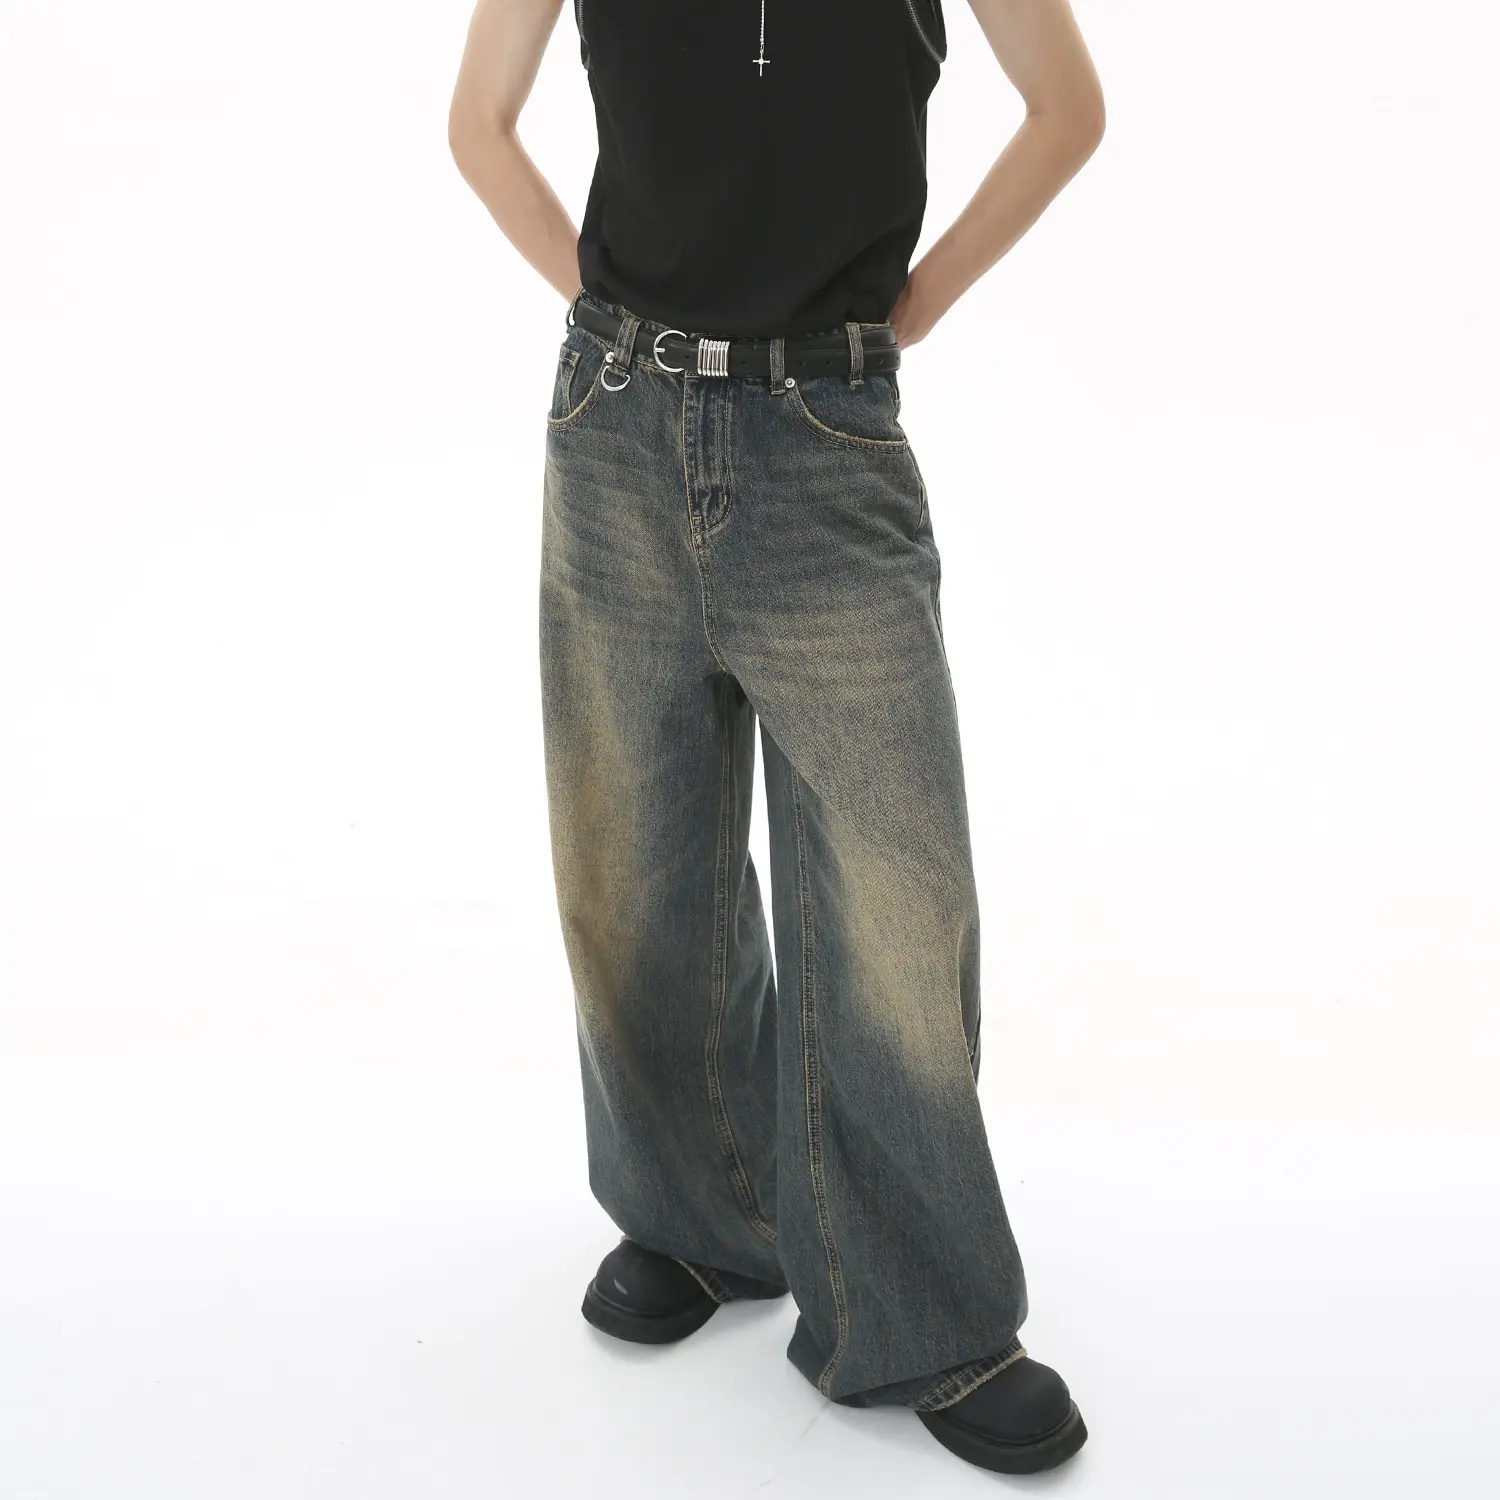 กางเกงยีนส์ขาตรงขากว้างสำหรับผู้ชายกางเกงยีนส์ทรงหลวมสำหรับผู้ชายปรับแต่งโลโก้ได้ตามต้องการ